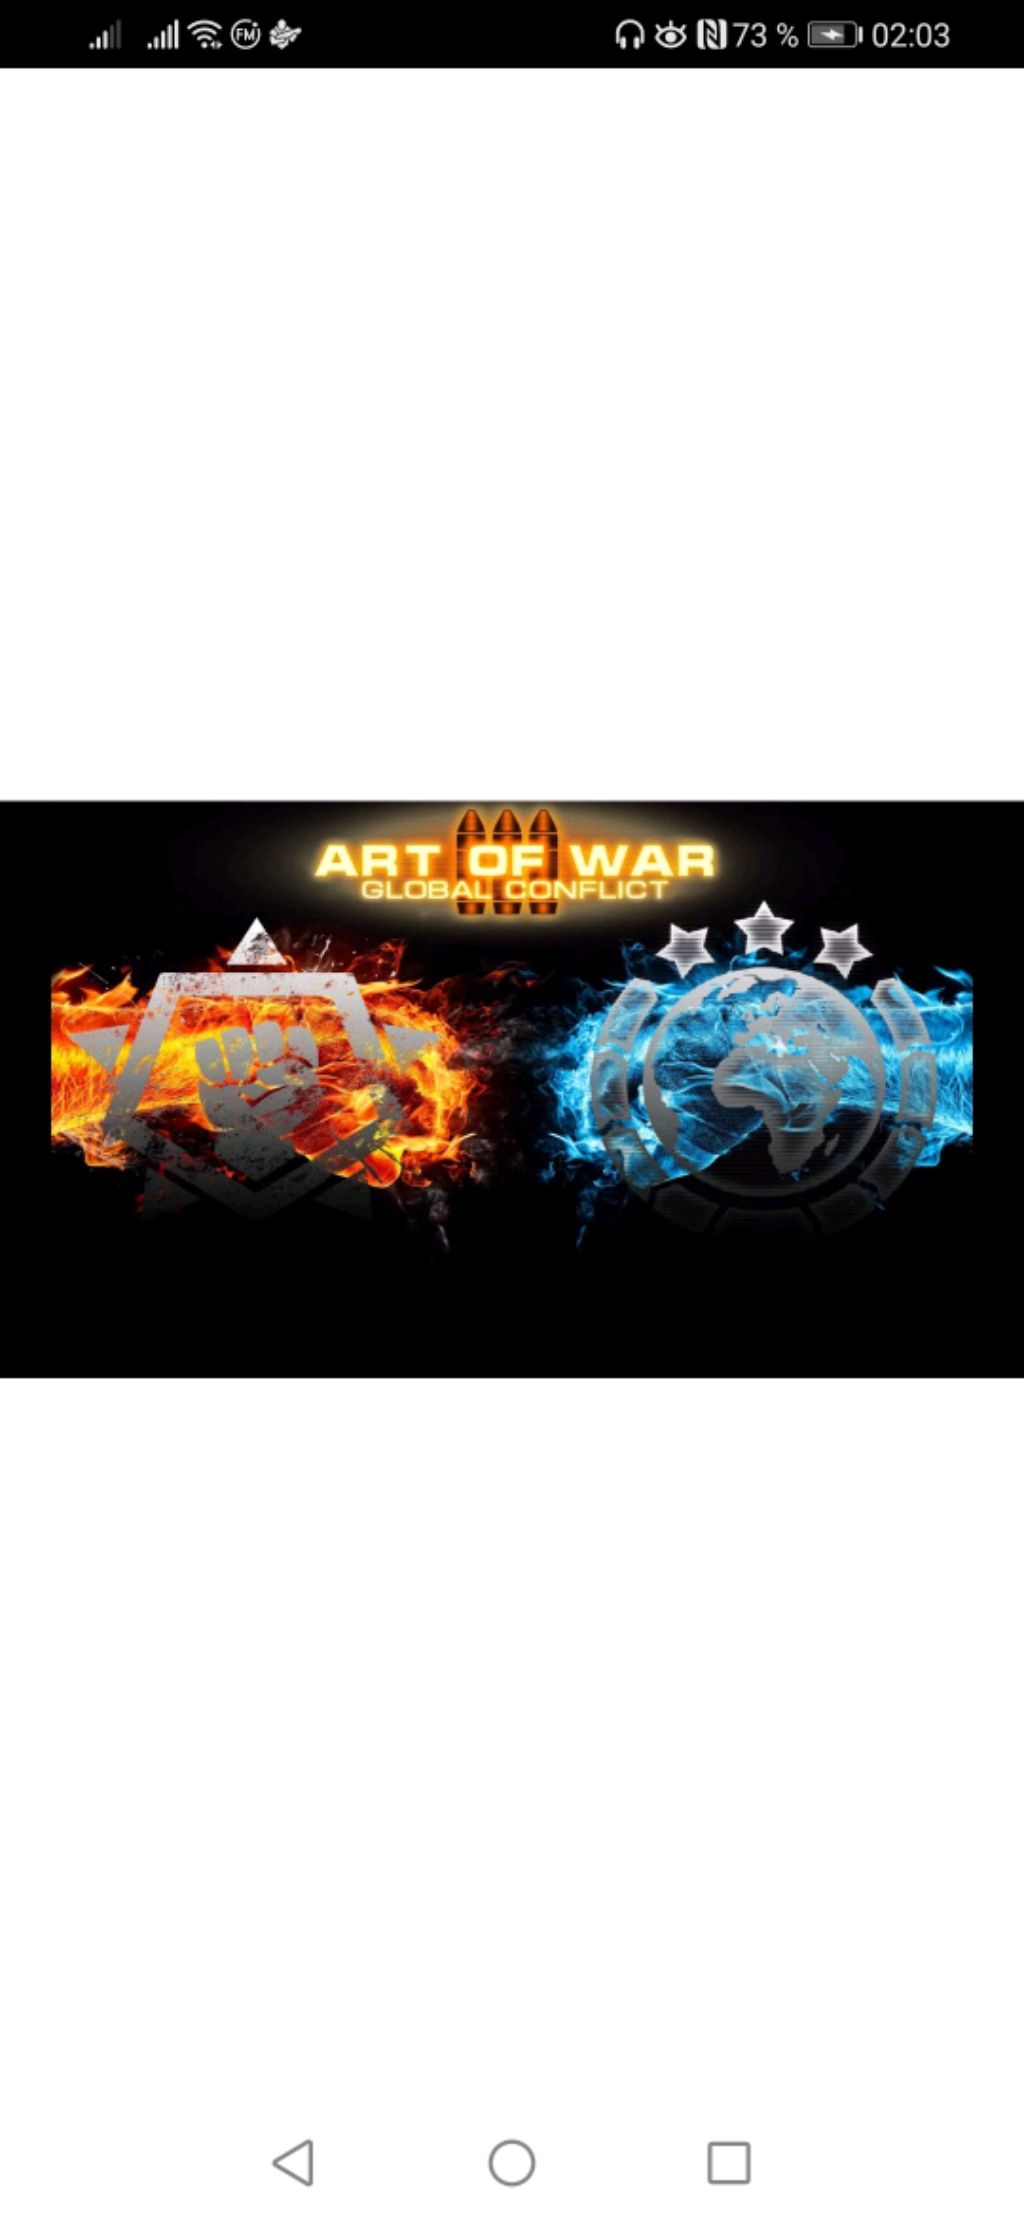 Art of war